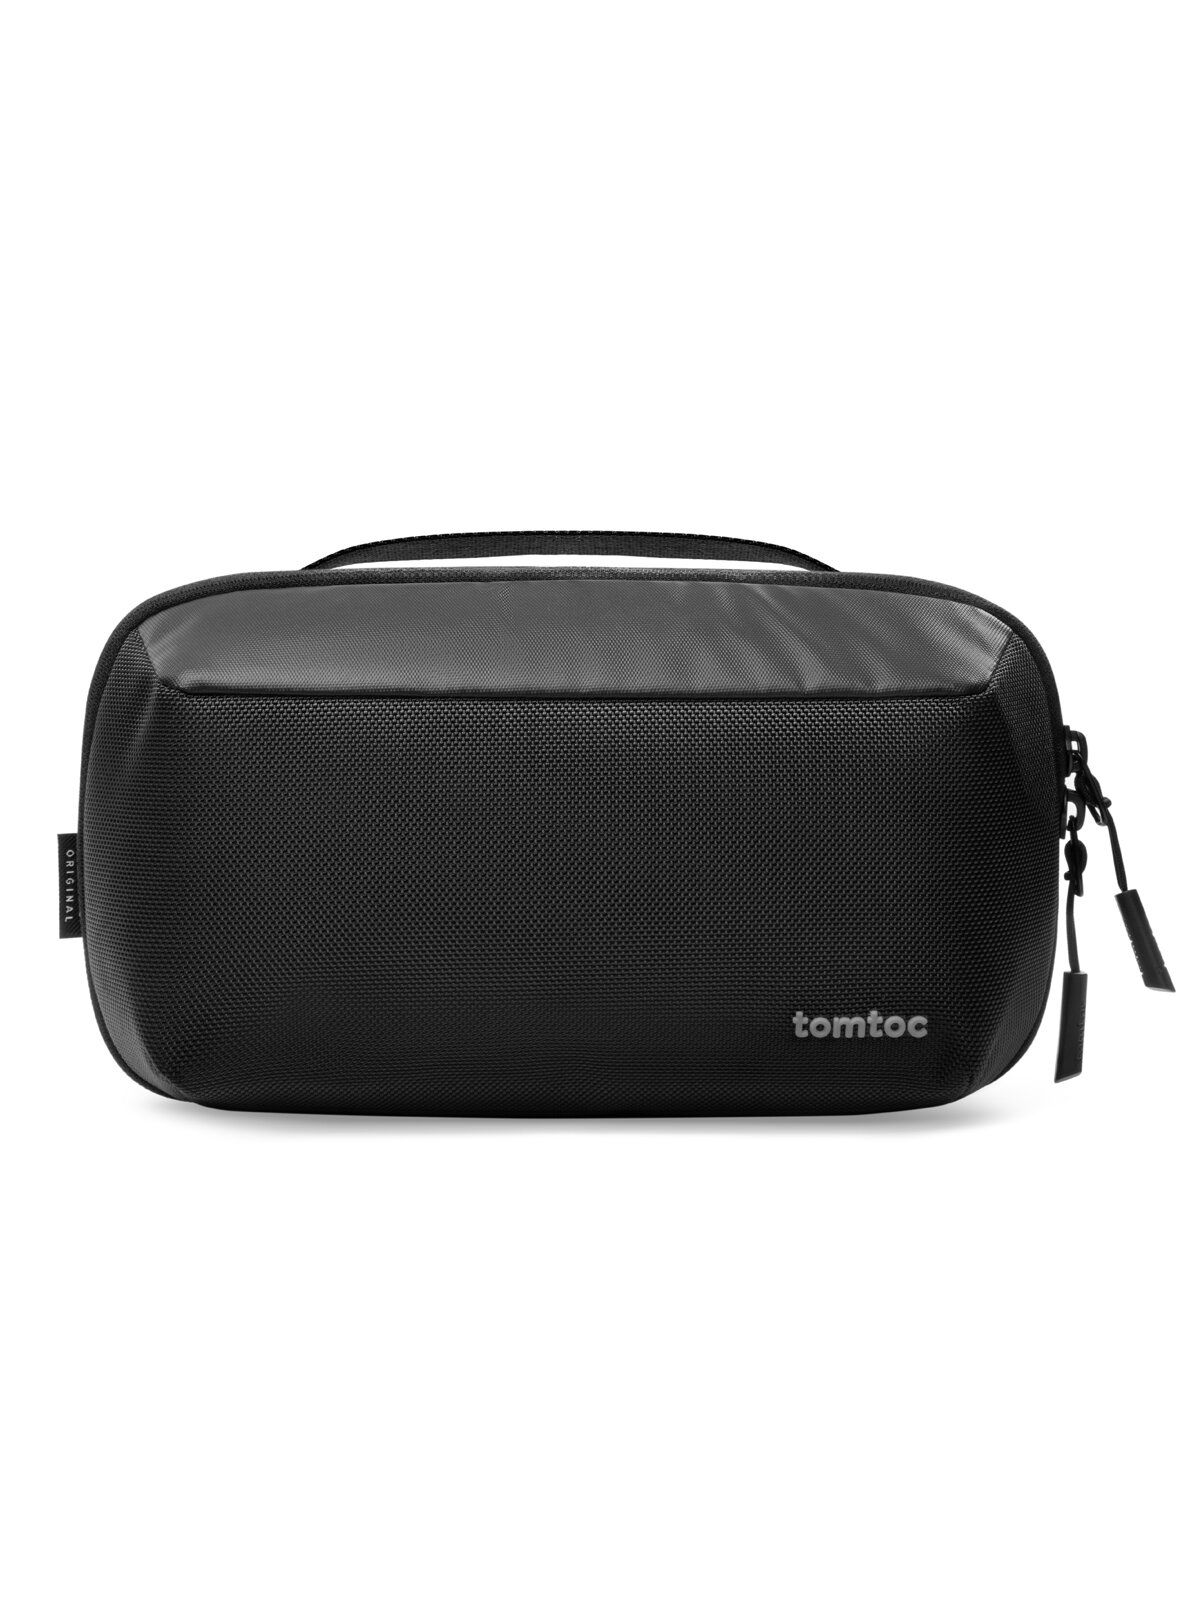 Tomtoc для аксессуаров сумка Accordion Accessory Pouch A01 Black